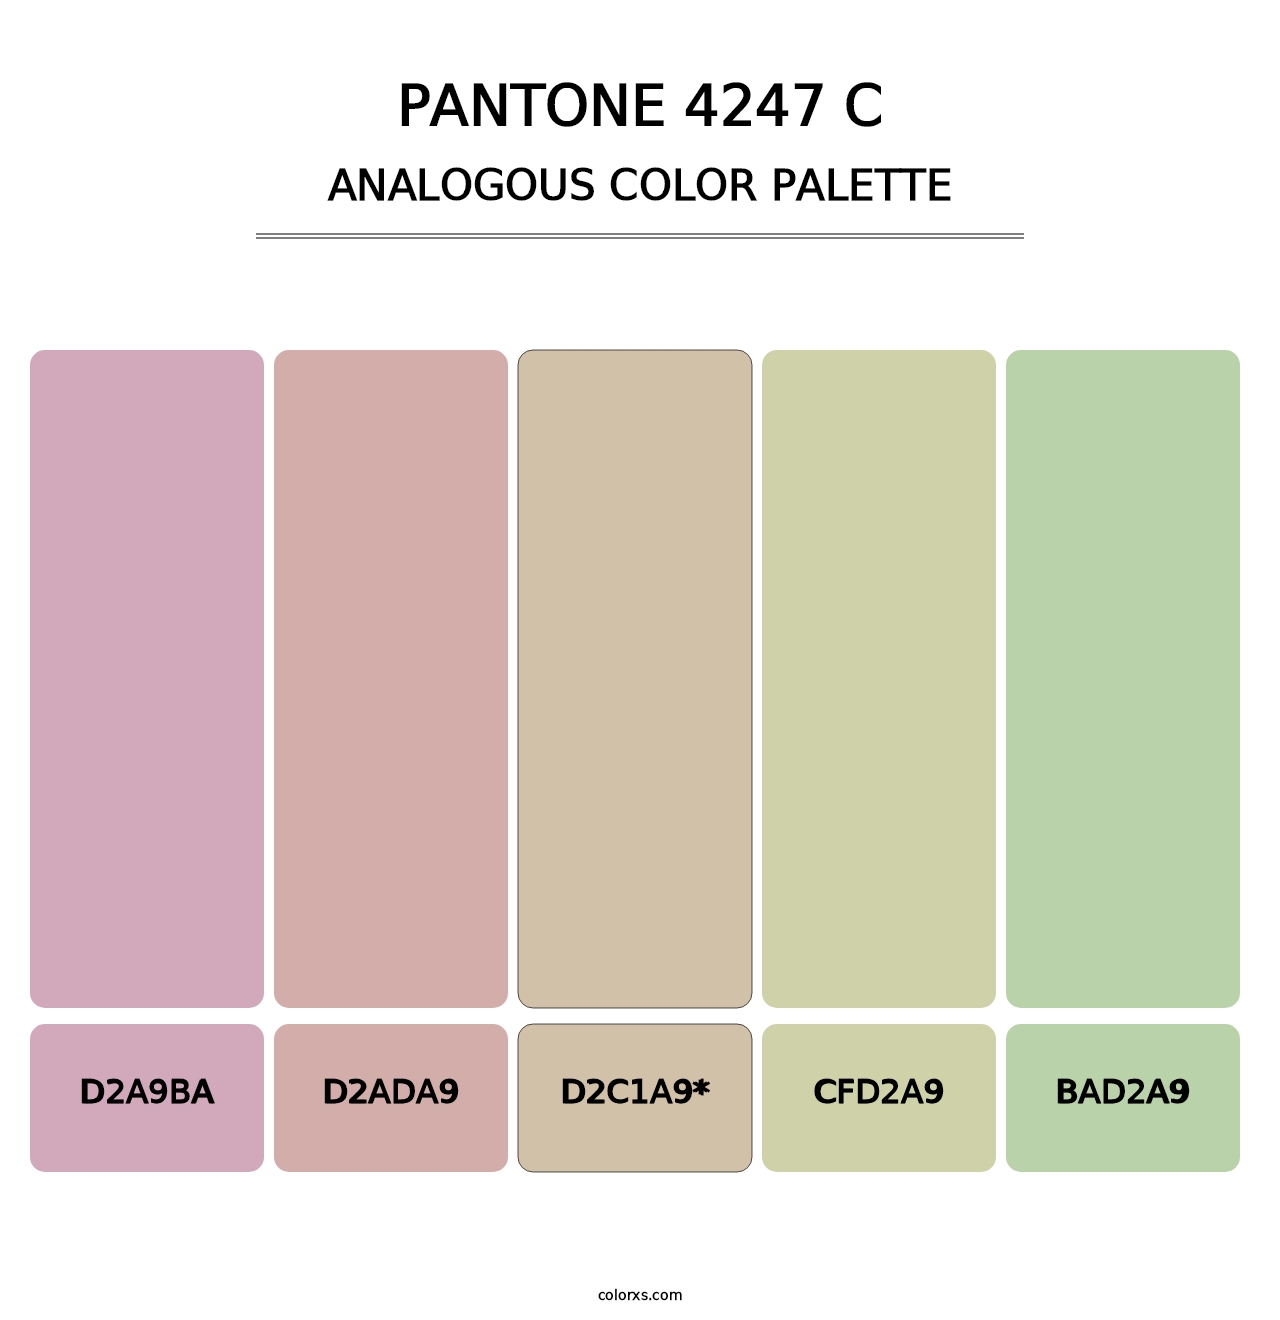 PANTONE 4247 C - Analogous Color Palette